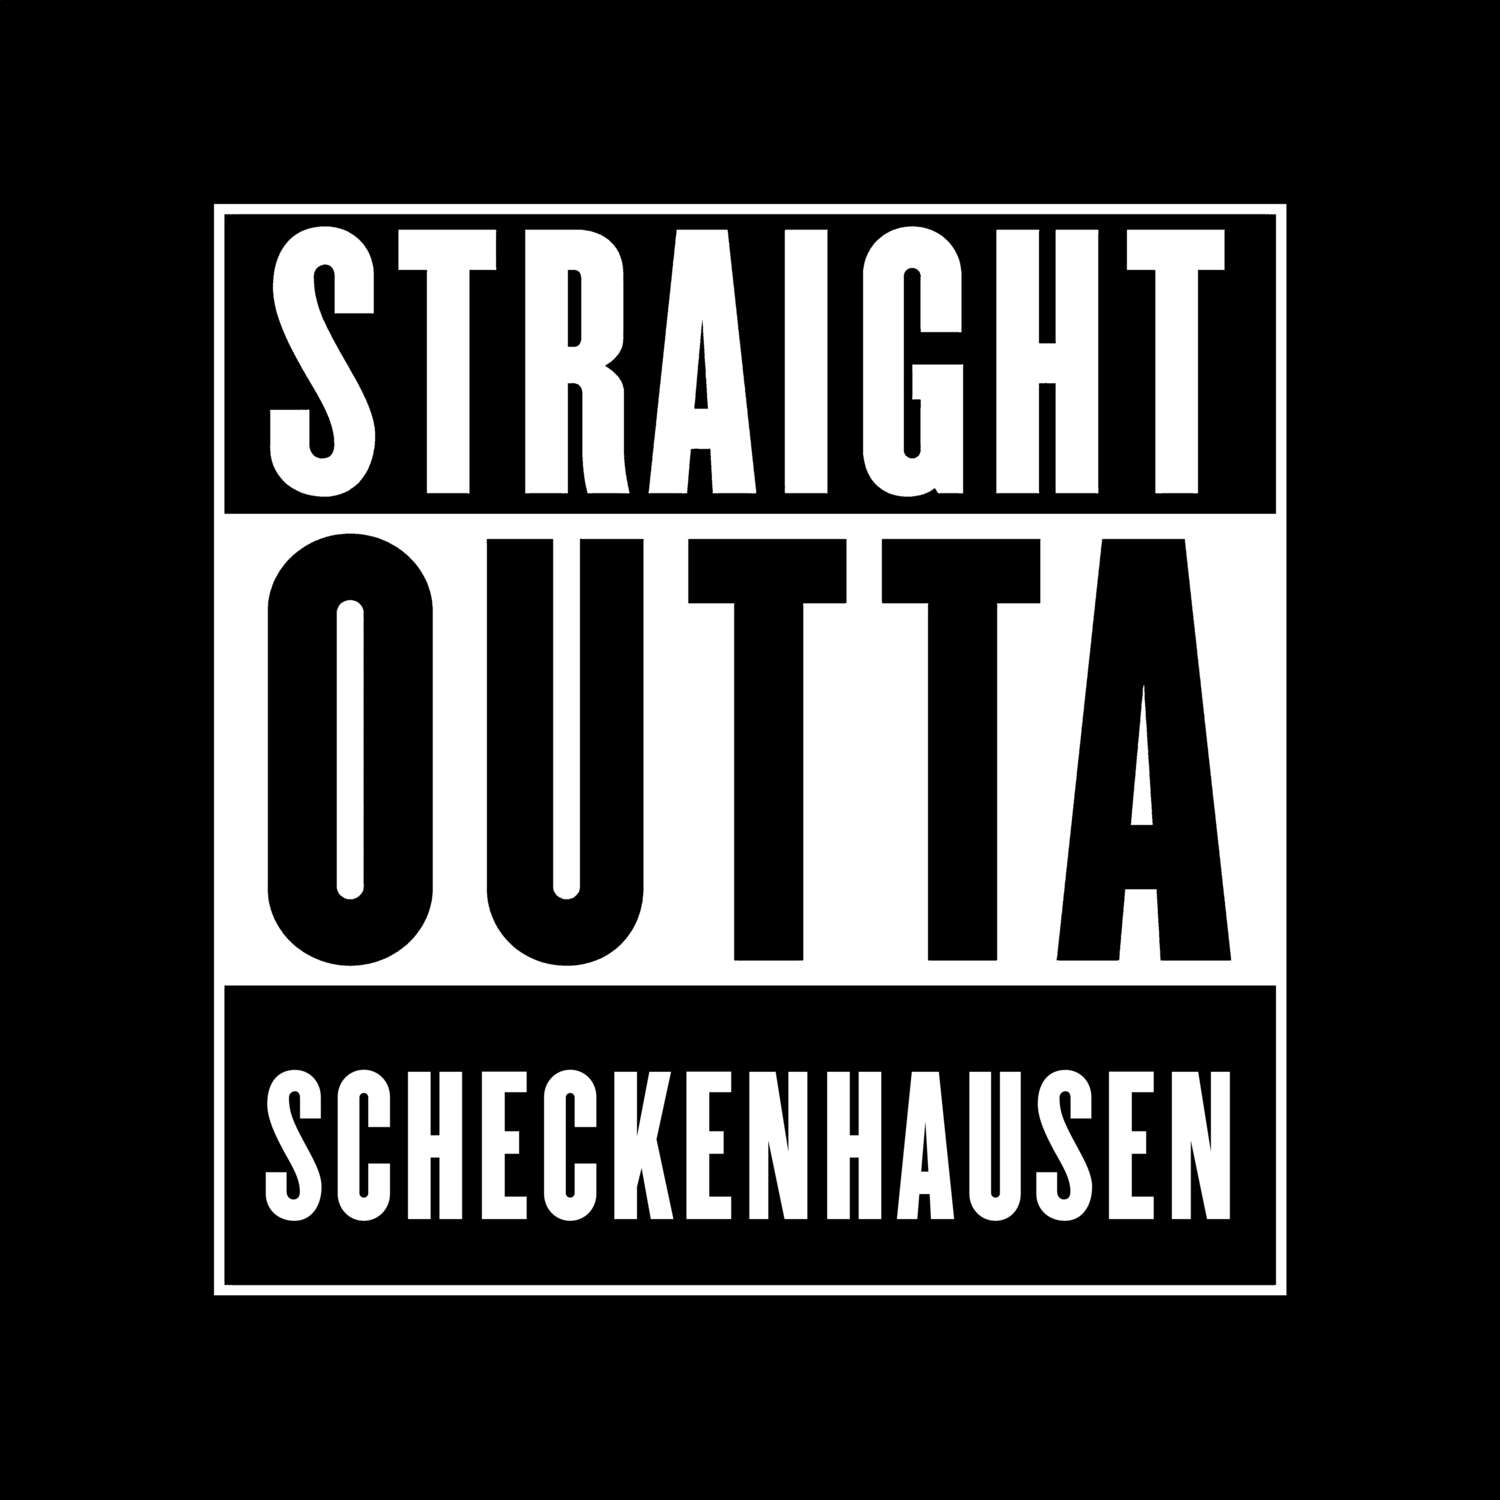 Scheckenhausen T-Shirt »Straight Outta«